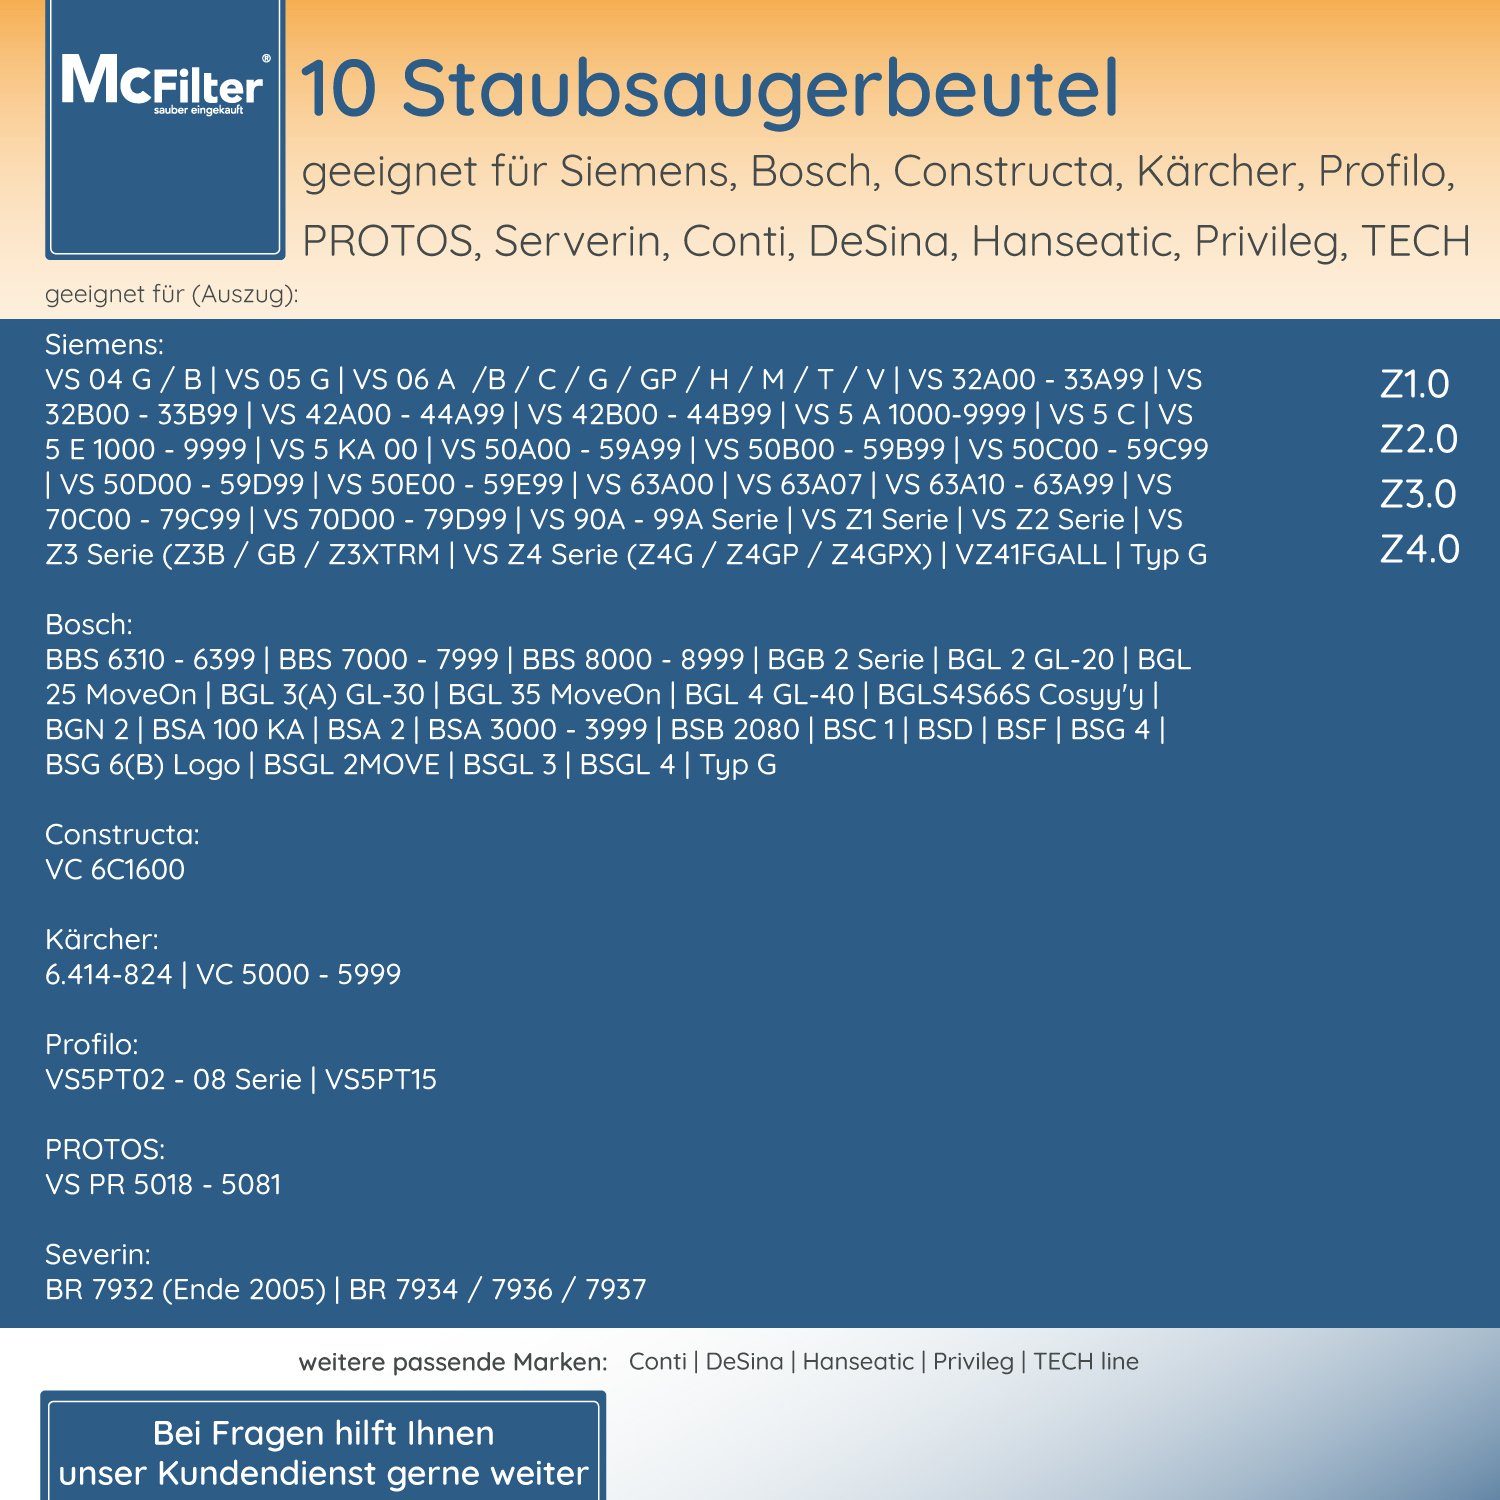 McFilter Staubsaugerbeutel, passend für Staubsauger, St., Hygieneverschluss, Siemens mit Filter VSZ3XTRM11 inkl. 30 Staubbeutel 5-lagiger